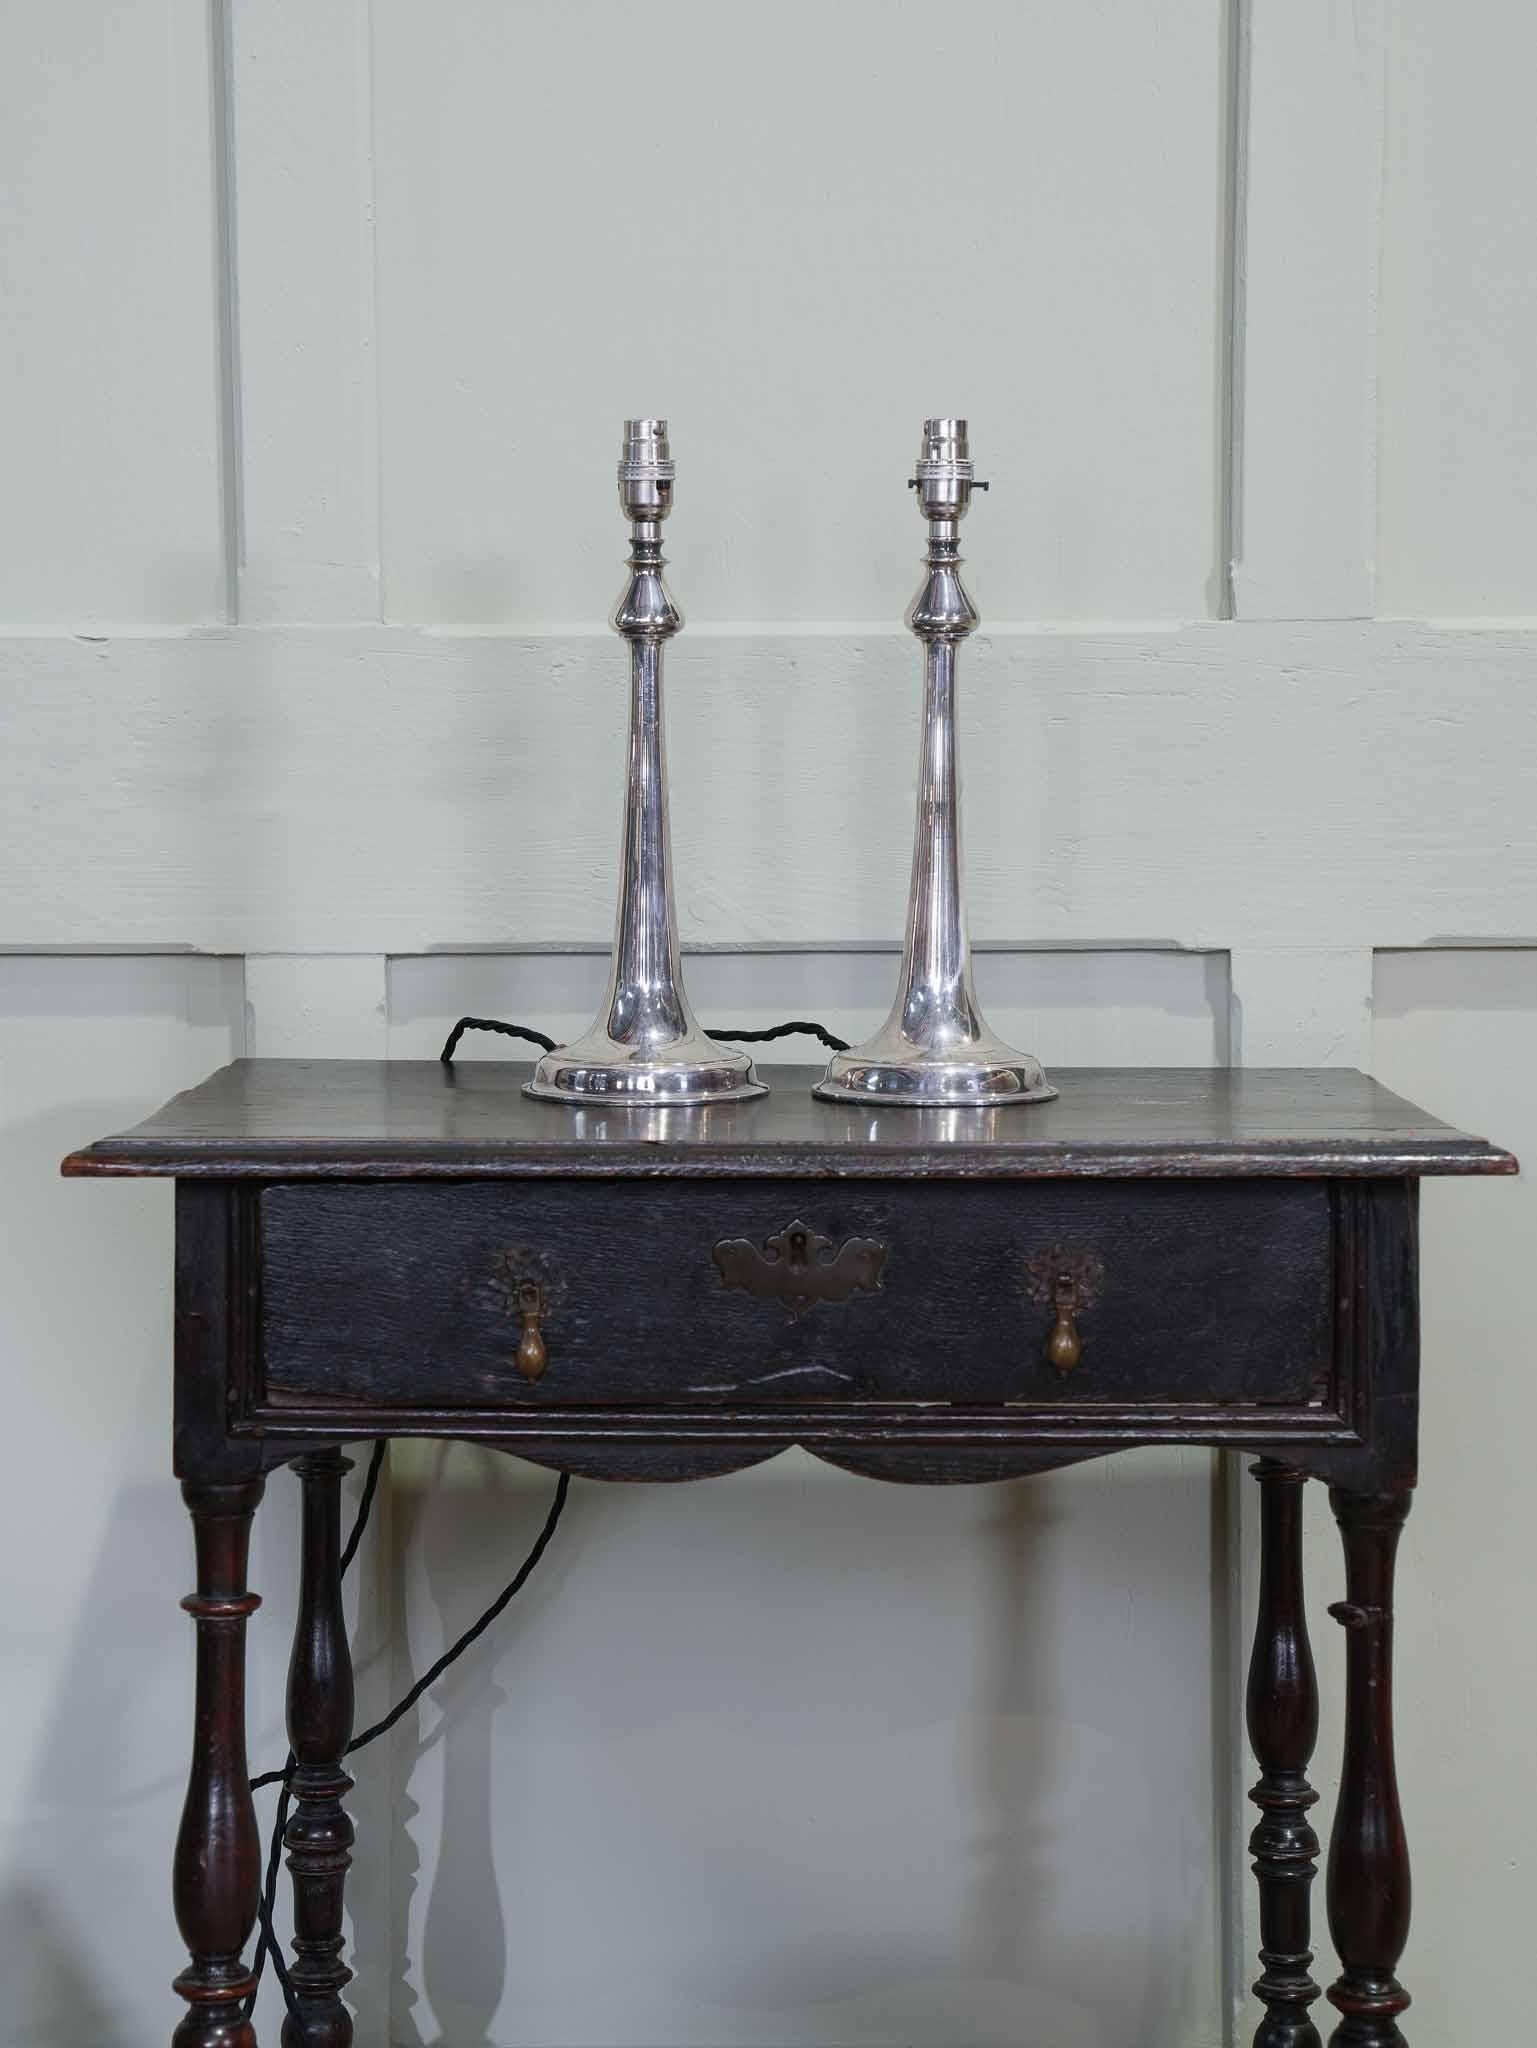 Paire de lampes de table argentées très chics.

Merveilleuse qualité, forme et état.

Livrée recâblée avec un câble recouvert de tissu antique et testée par pat.